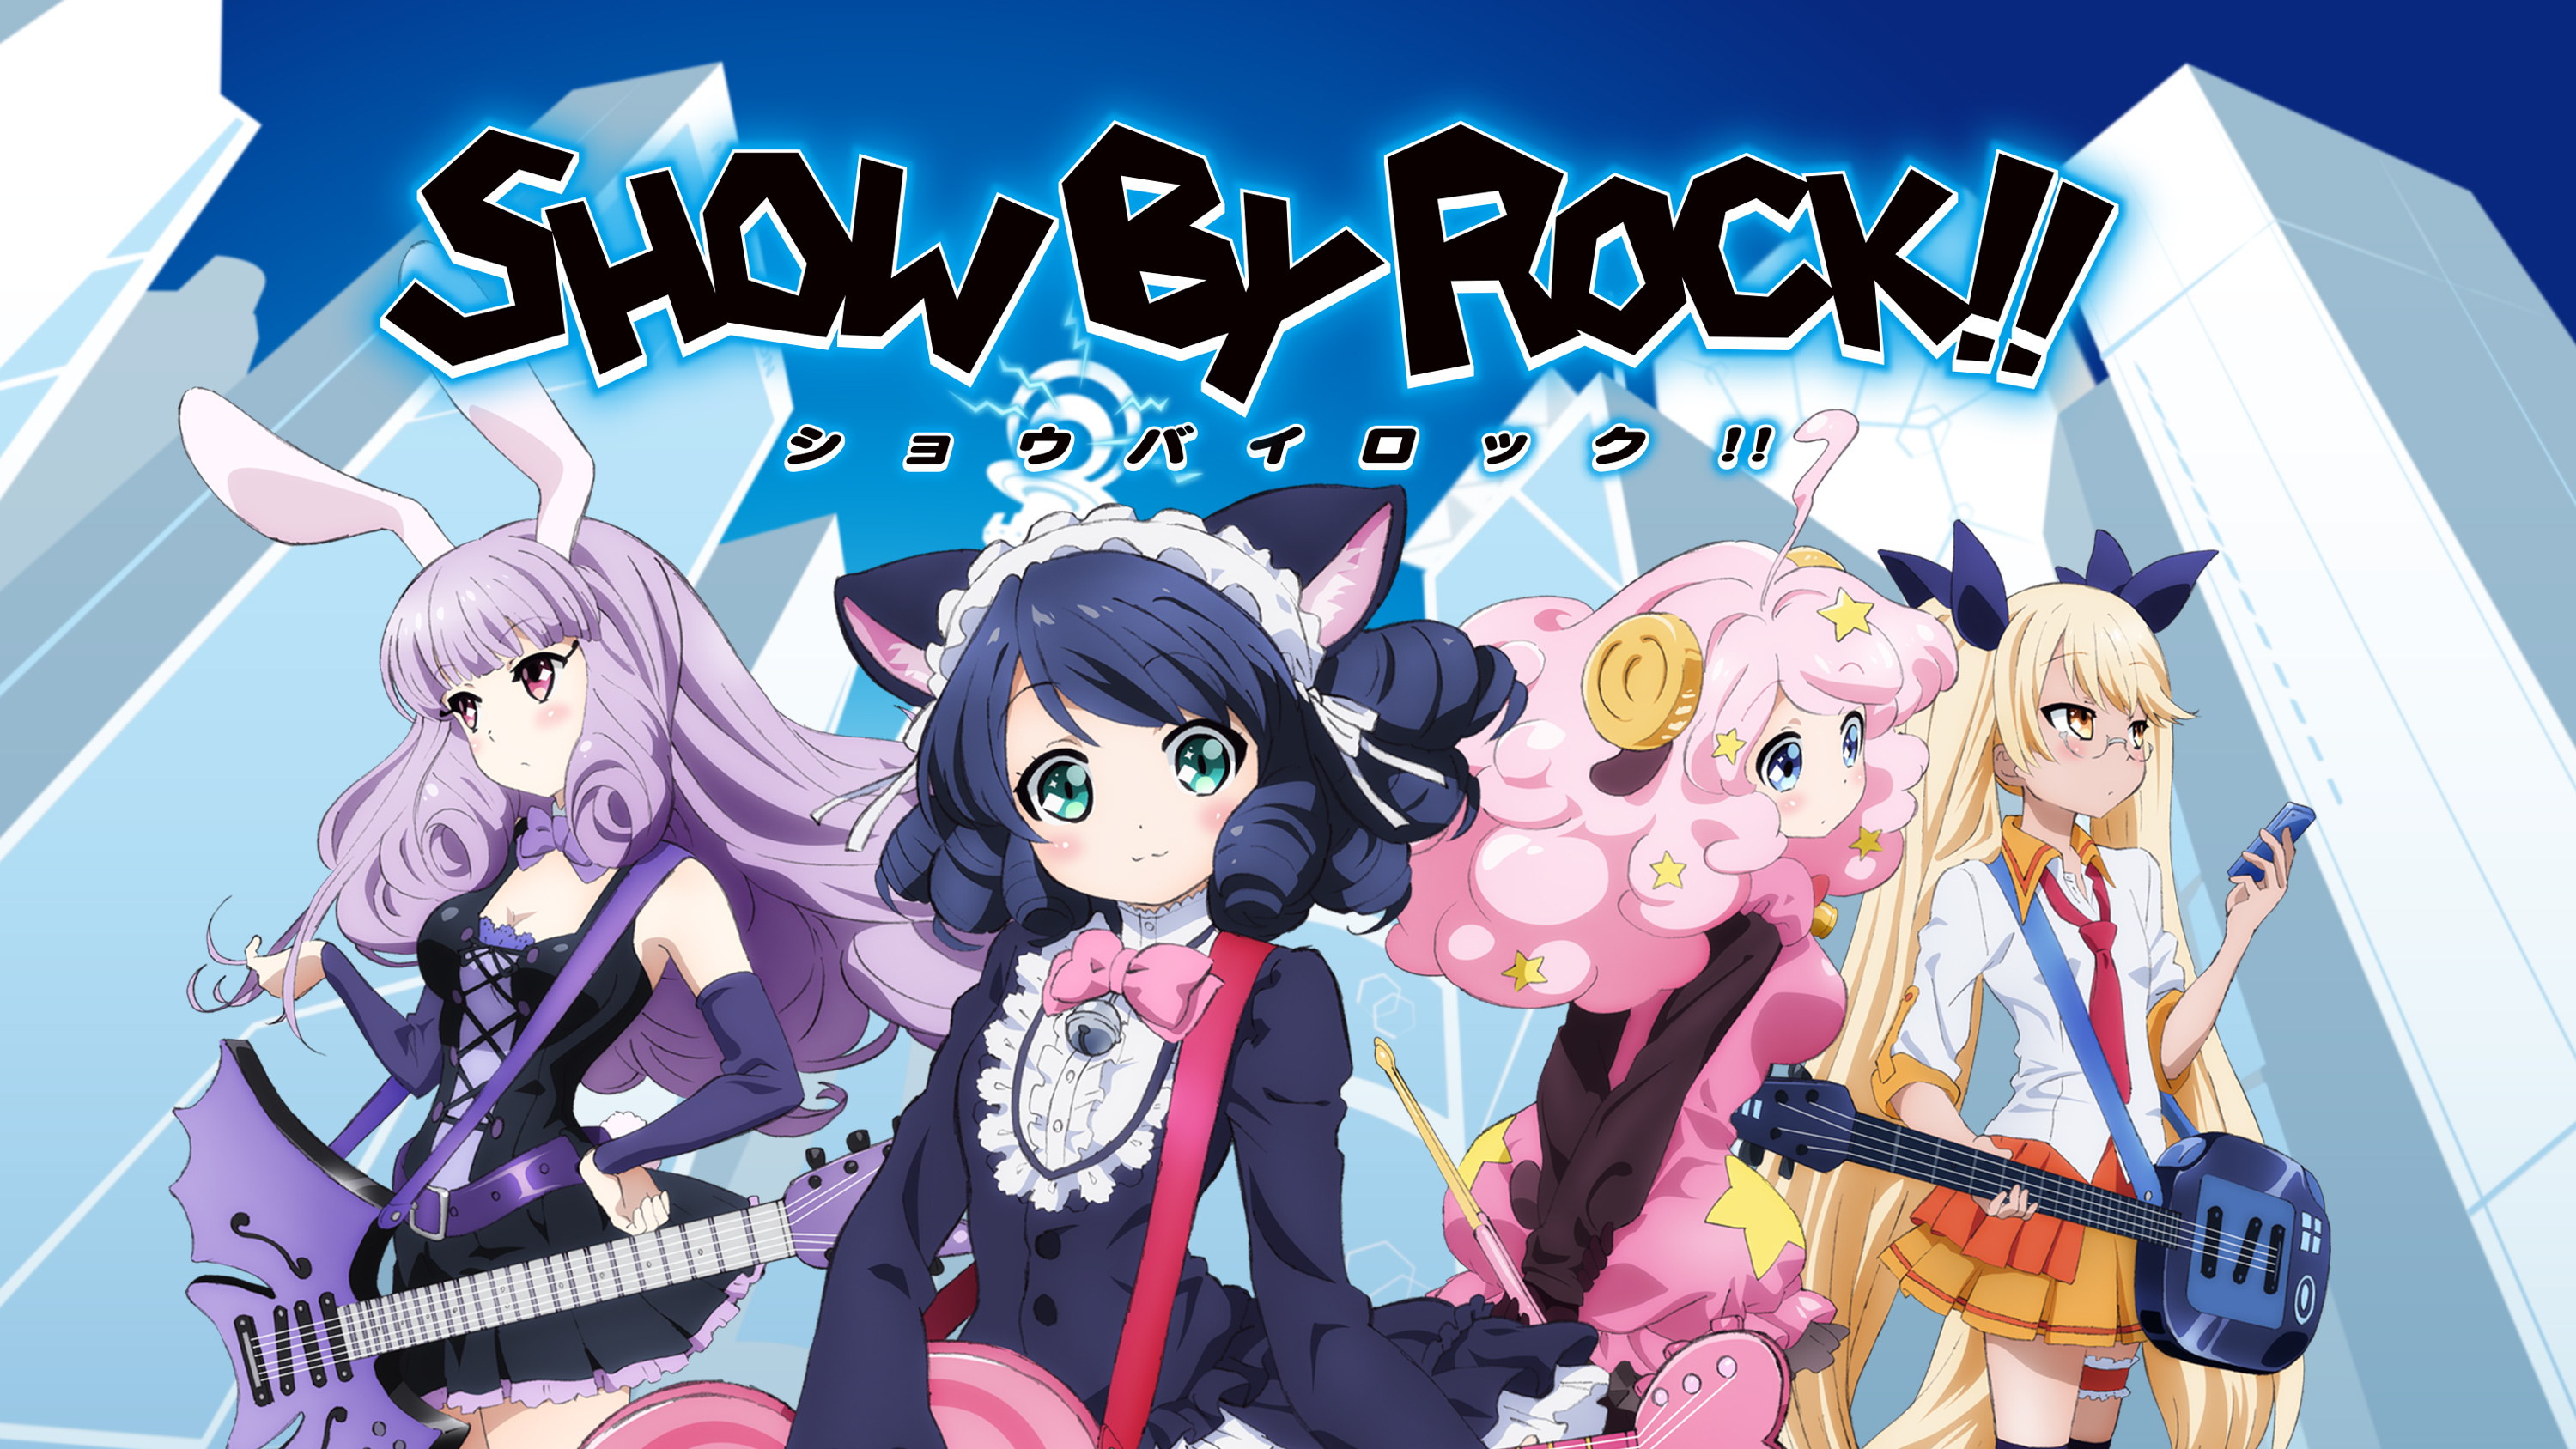 ChuChu Show By Rock Cyan Hijirikawa Moa Show By Rock Retoree Show By Rock 3000x1688